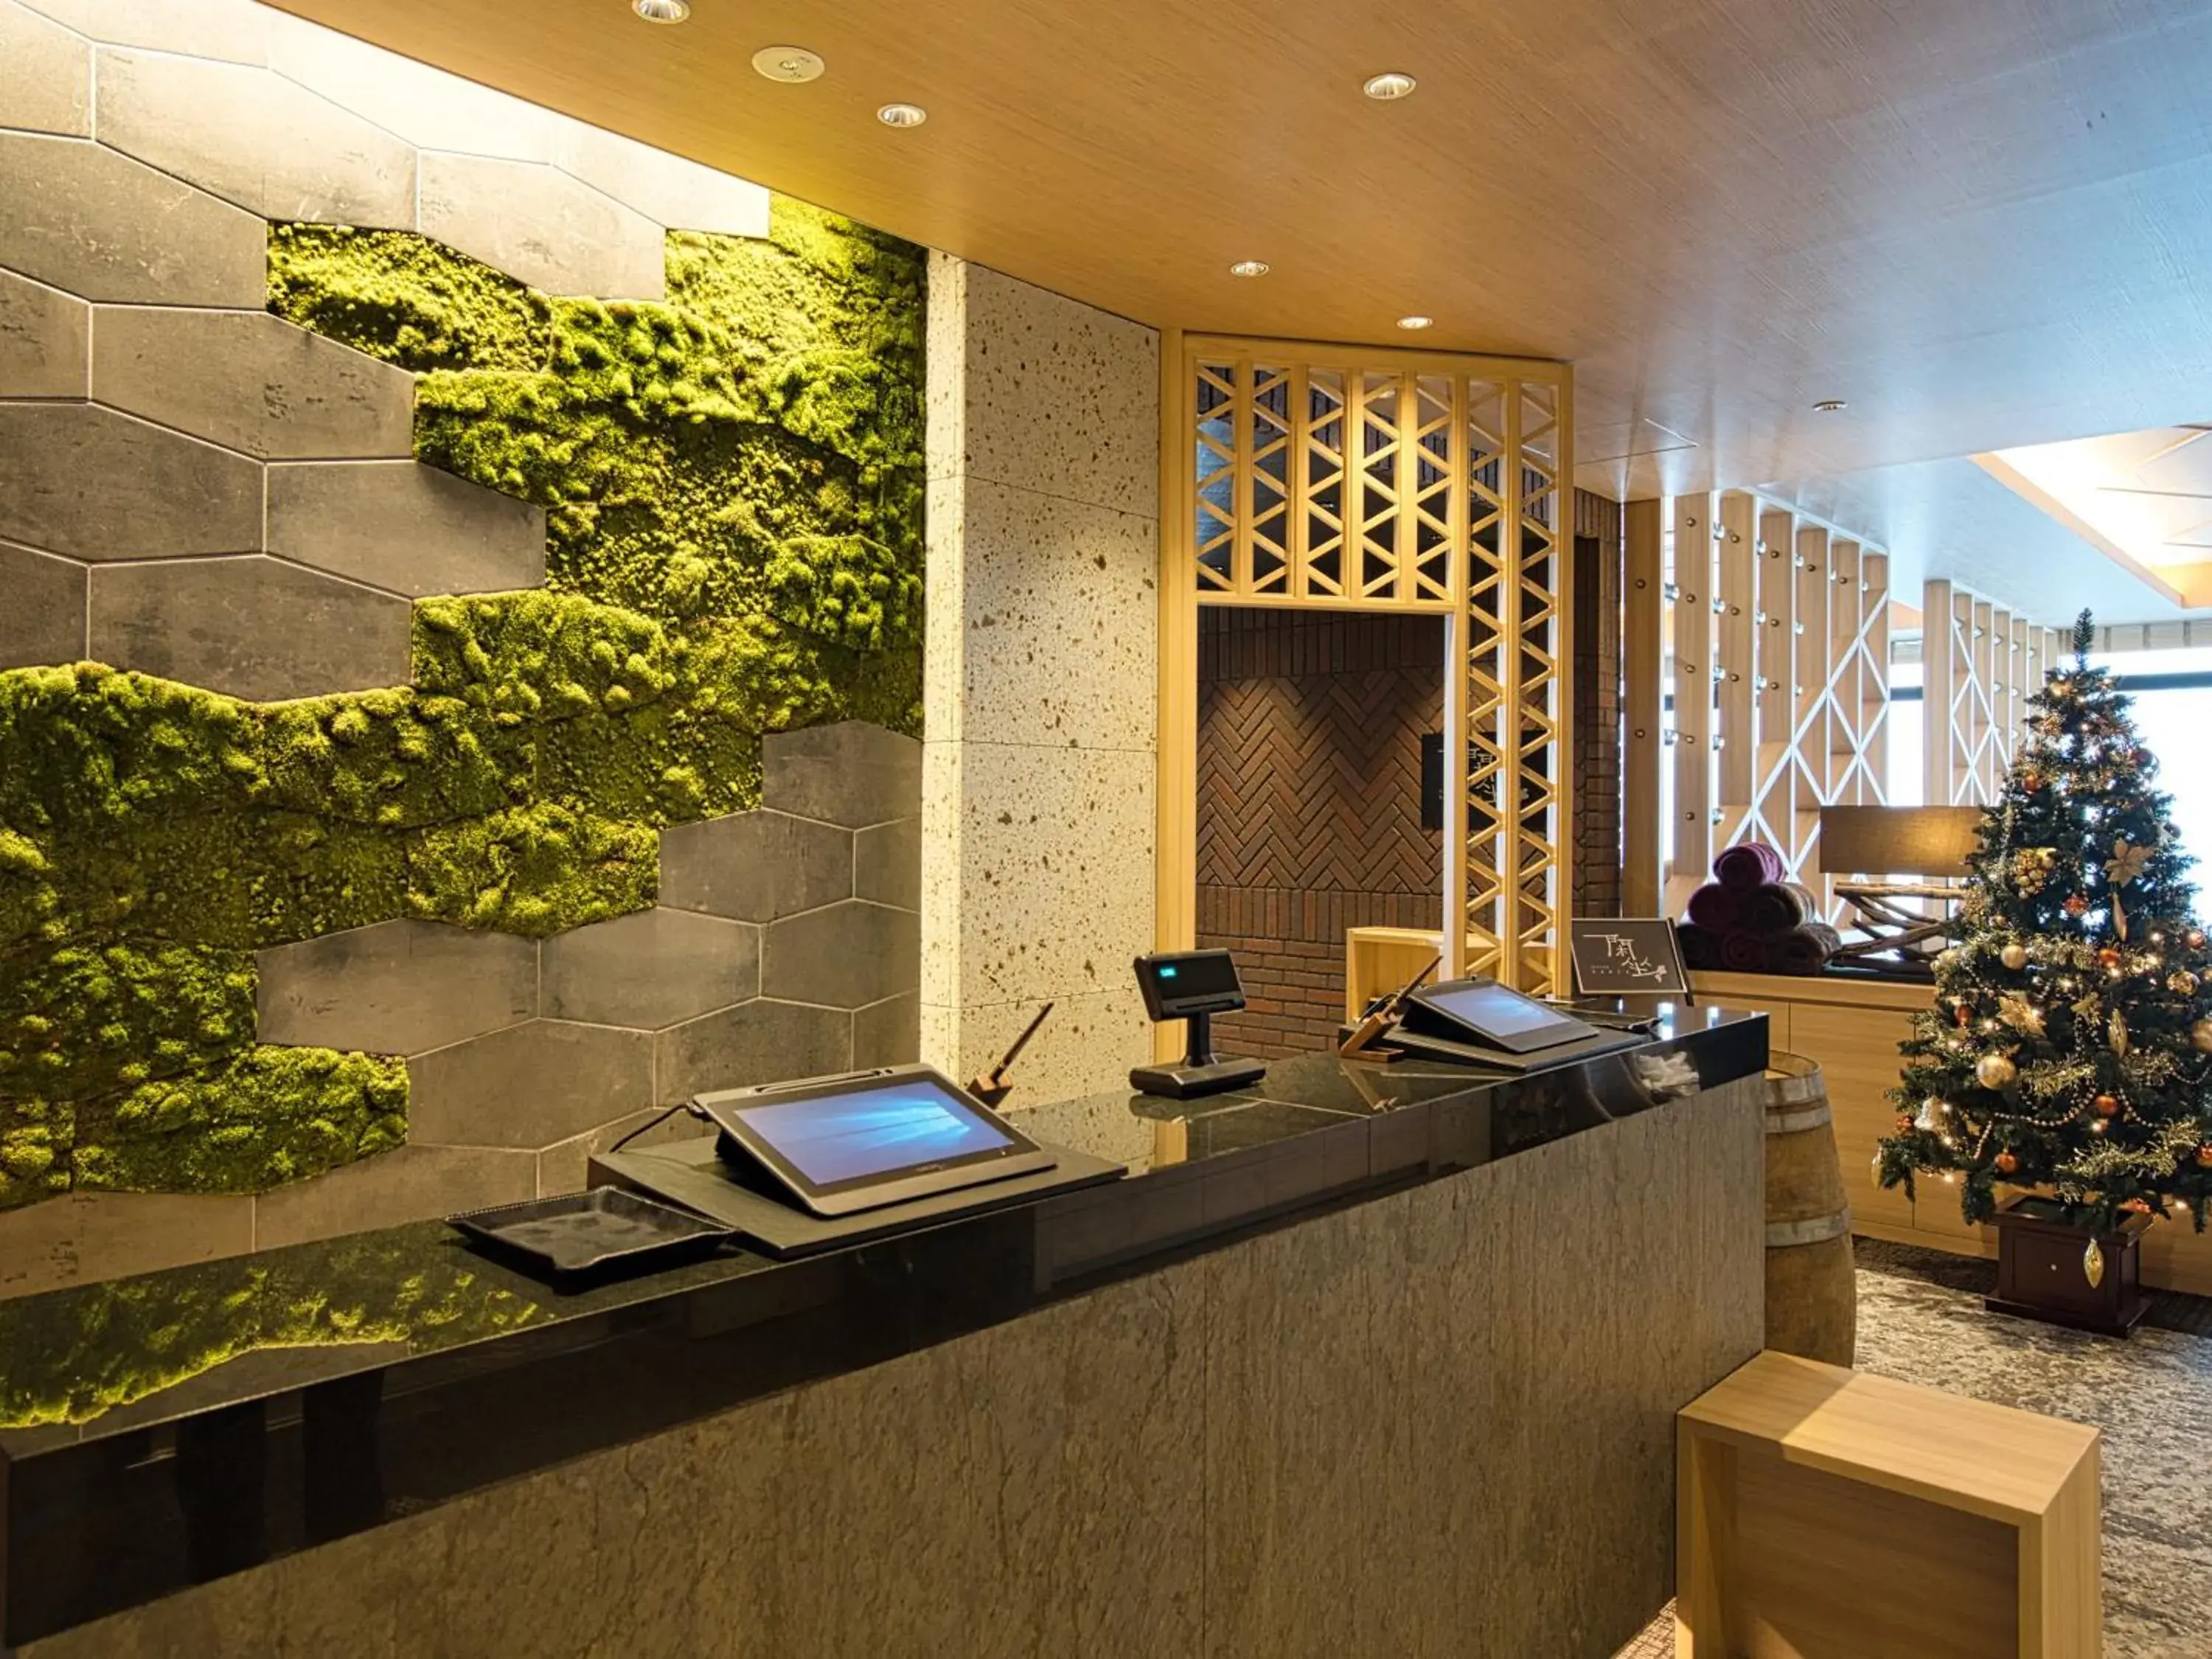 Lobby or reception in Winery Hotel and Condominium HITOHANA